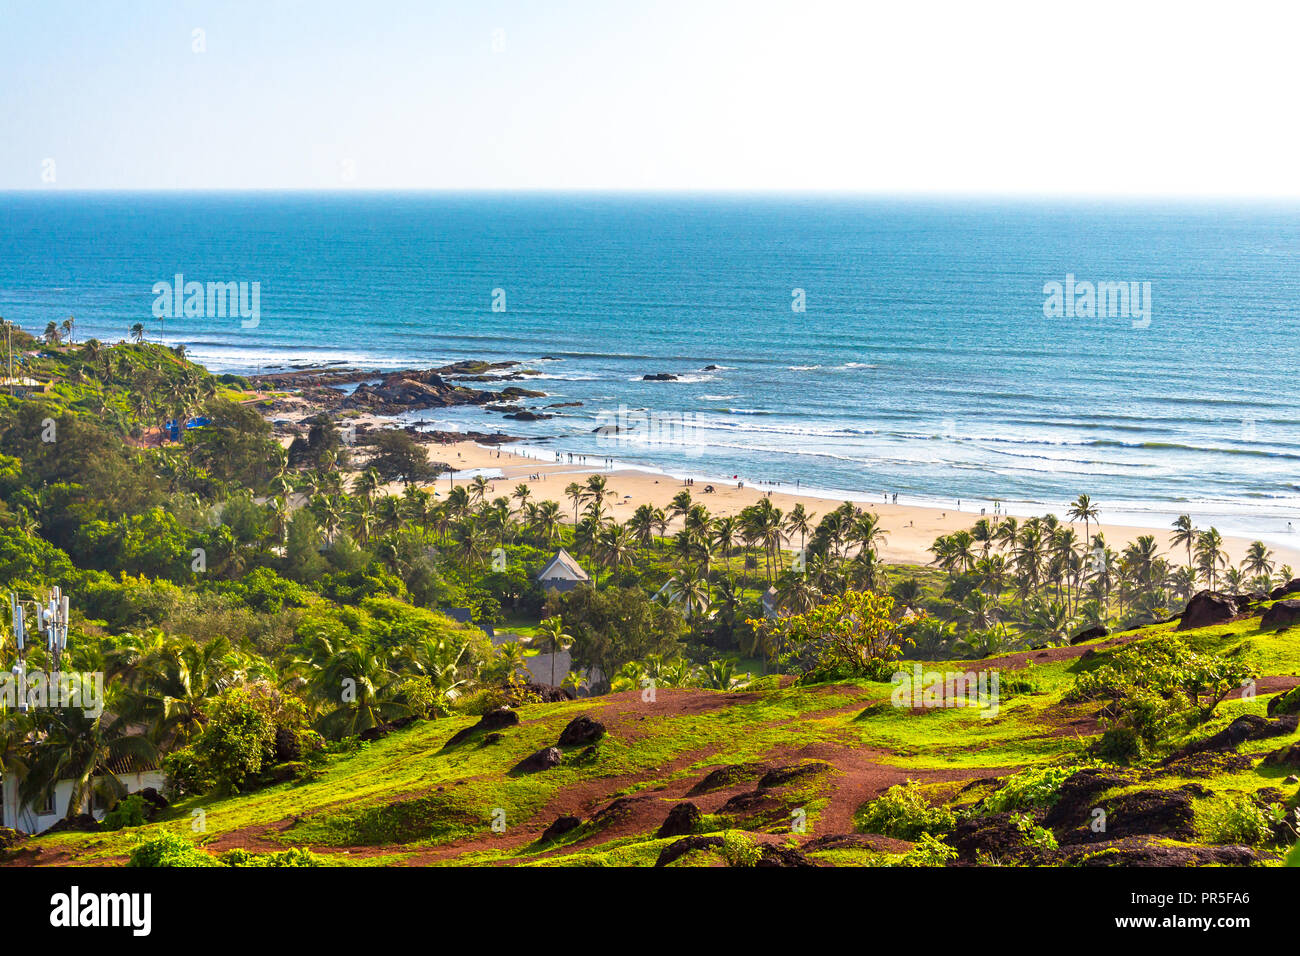 Green vedute della spiaggia di Vagator dalla sommità del Chapora Fort, Goa, India, Asia. Vagator Beach è una delle più belle spiagge di Goa nord. Foto Stock